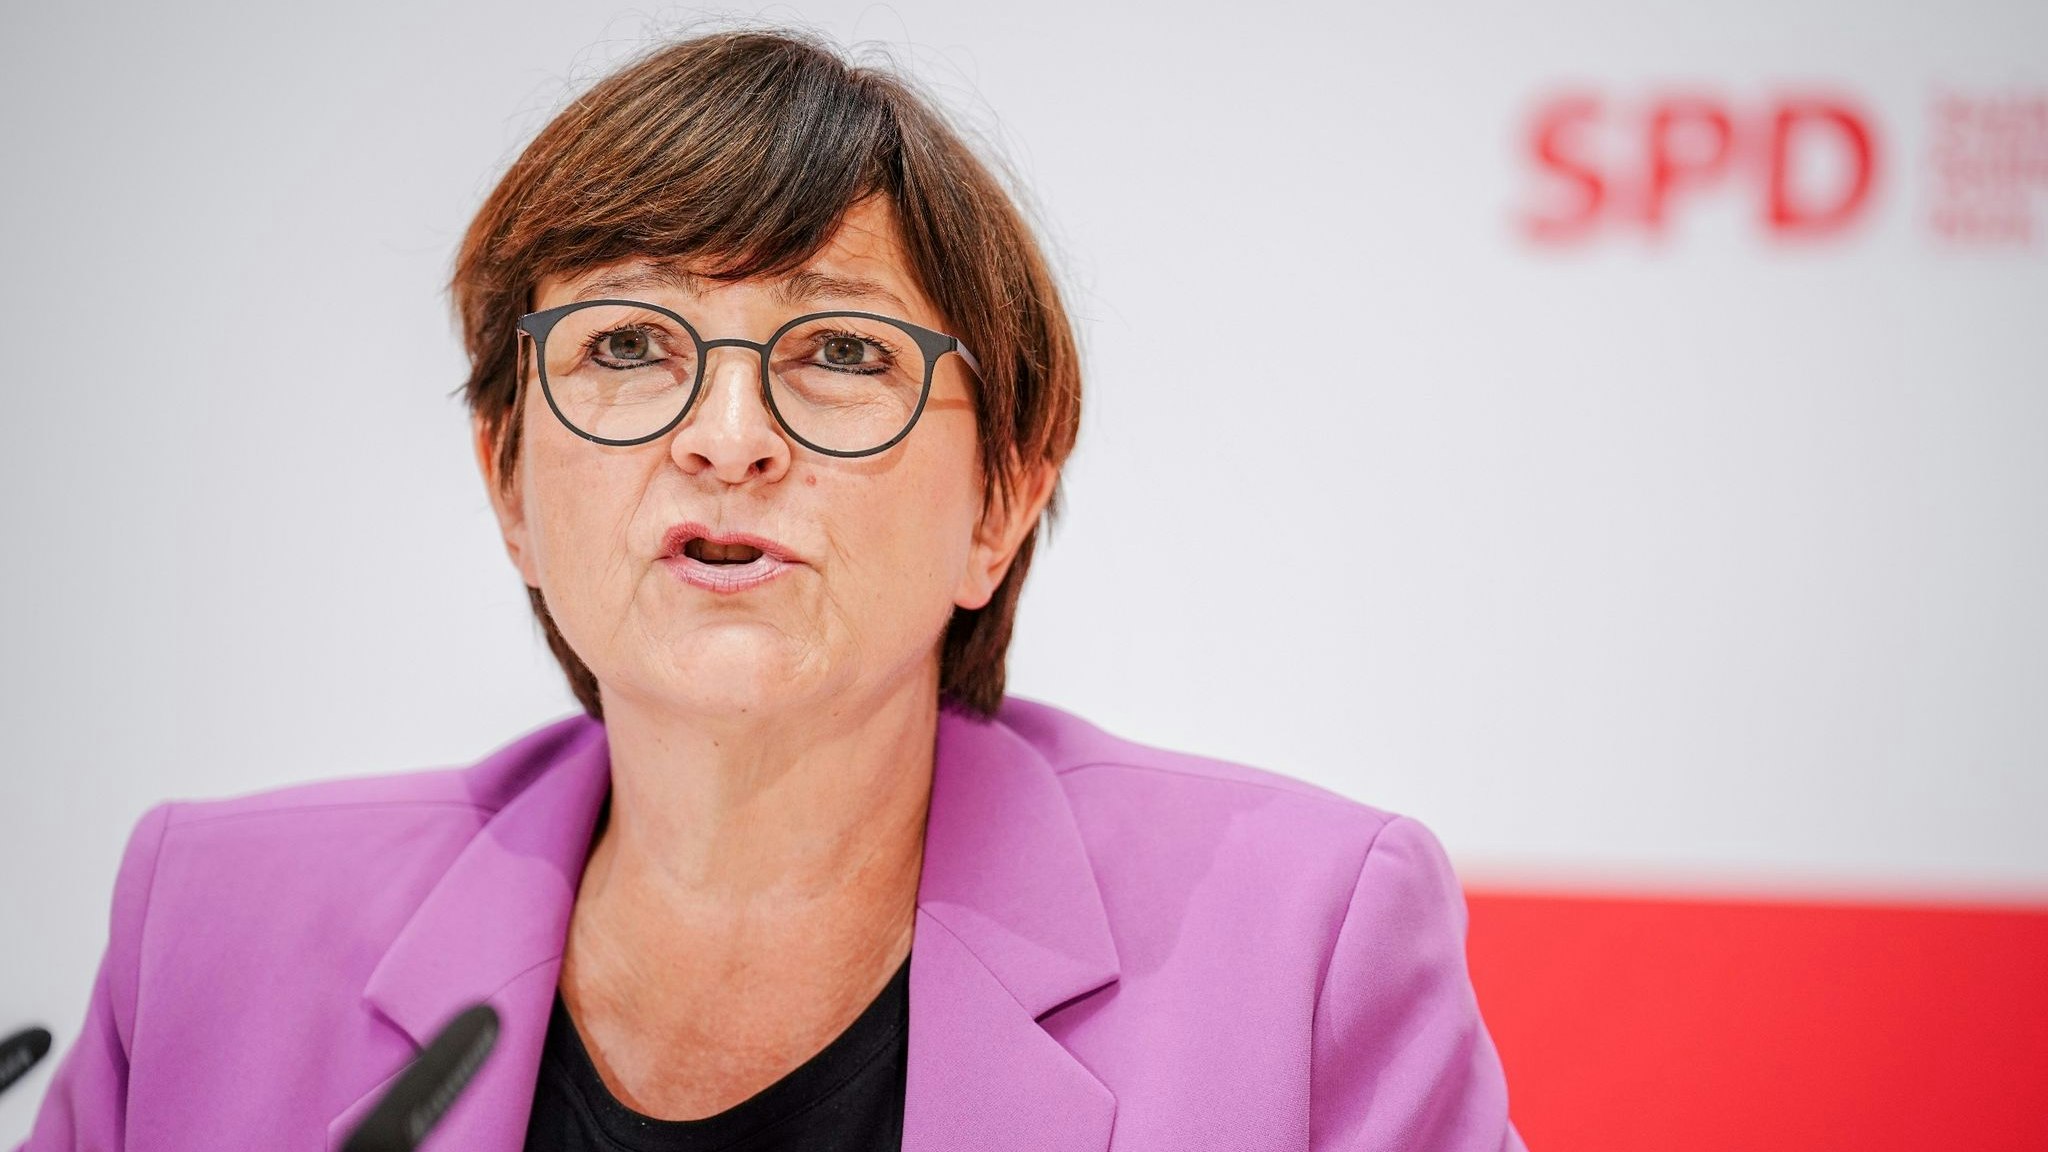 Saskia Esken, SPD-Bundesvorsitzende, gibt eine Pressekonferenz. Foto: dpa/Nietfeld